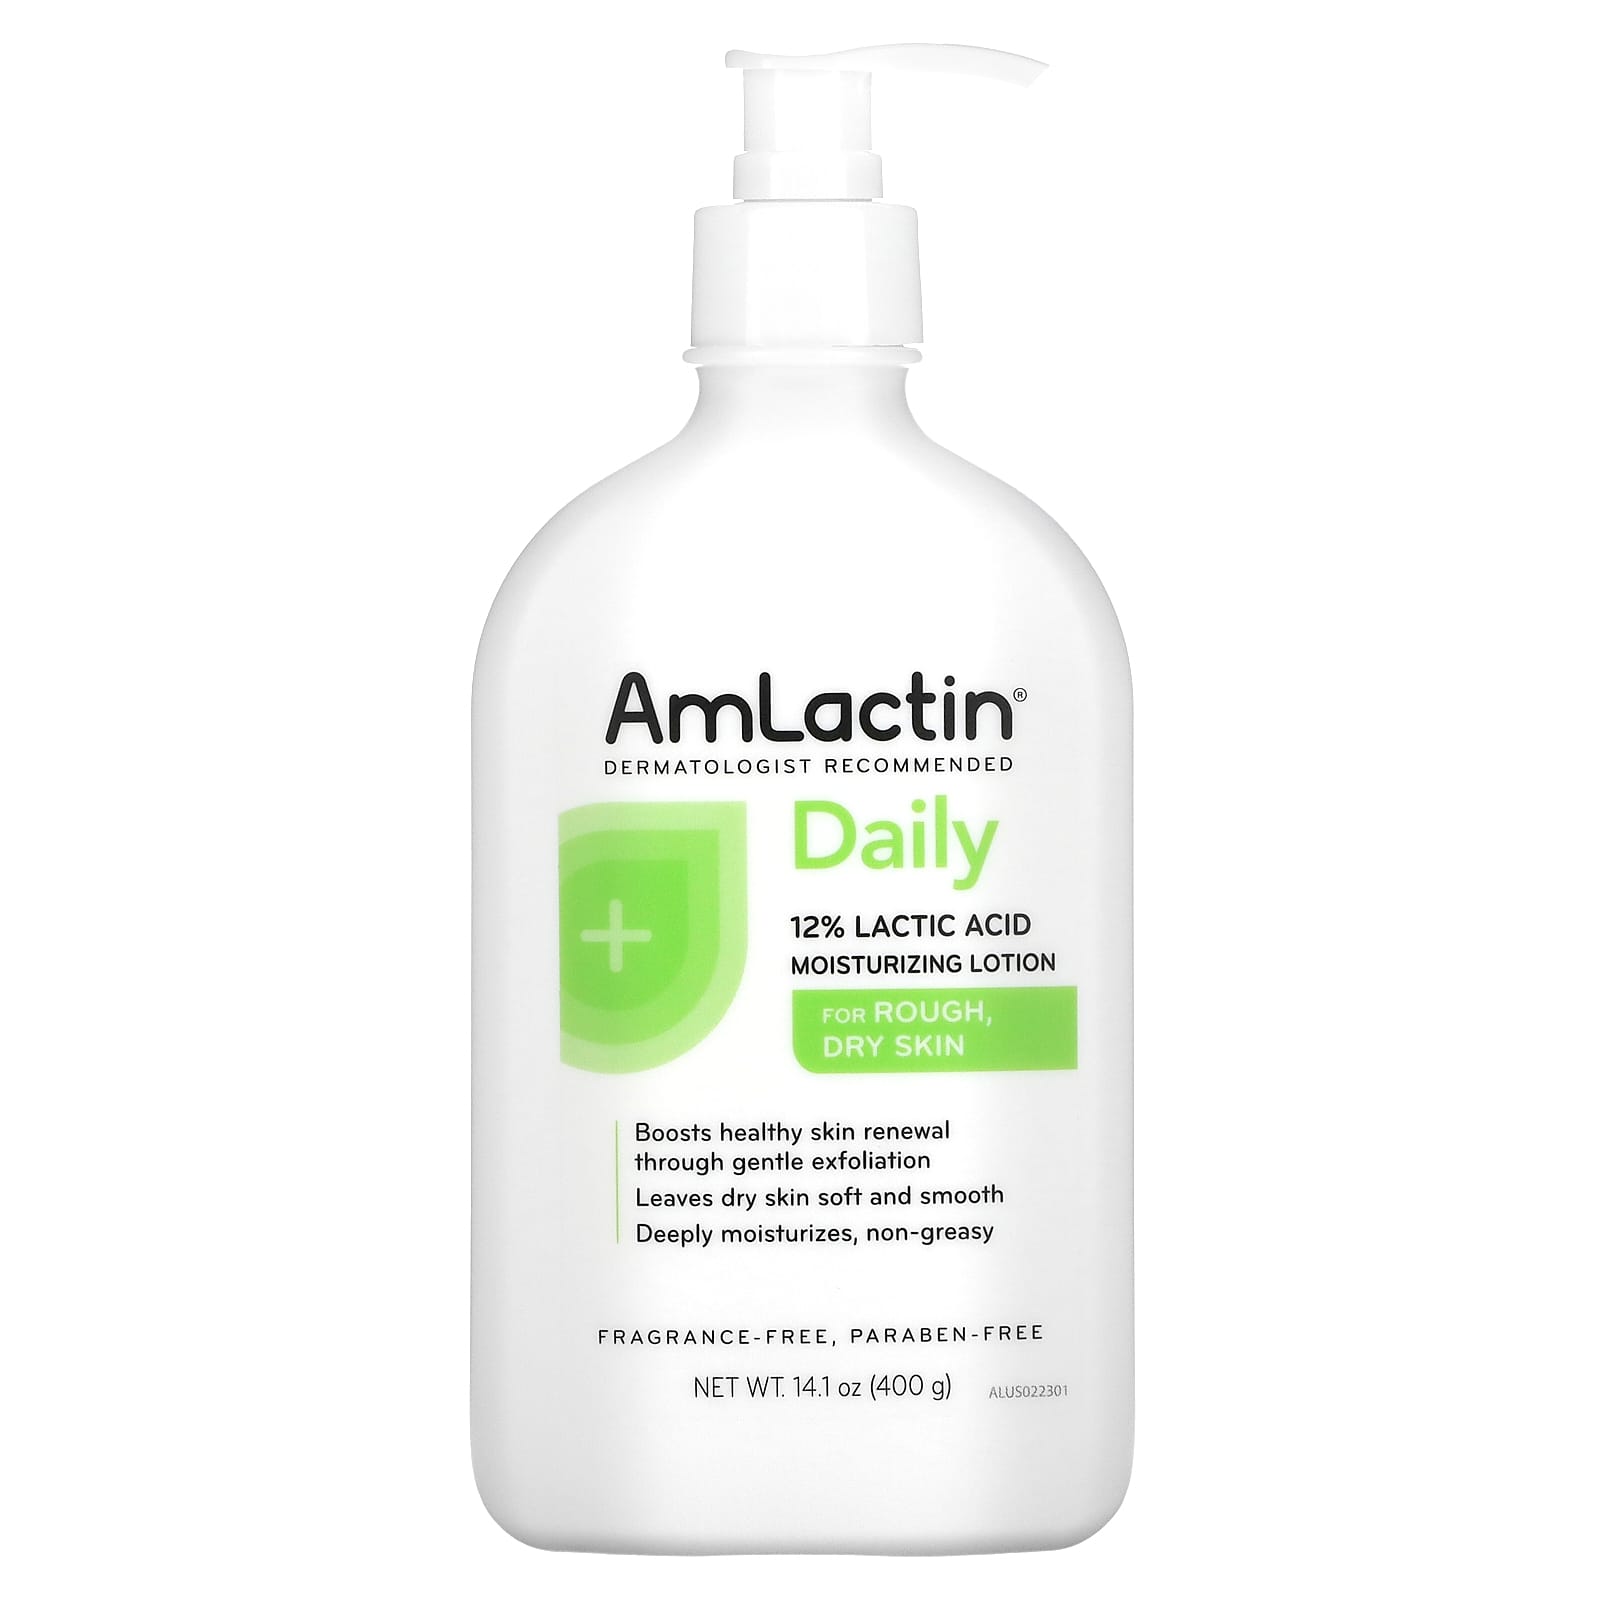 Увлажняющий Лосьон Amlactin с 12% молочной кислотой, 400 г amlactin увлажняющий лосьон для ежедневного применения без отдушки 400 г 14 1 унции